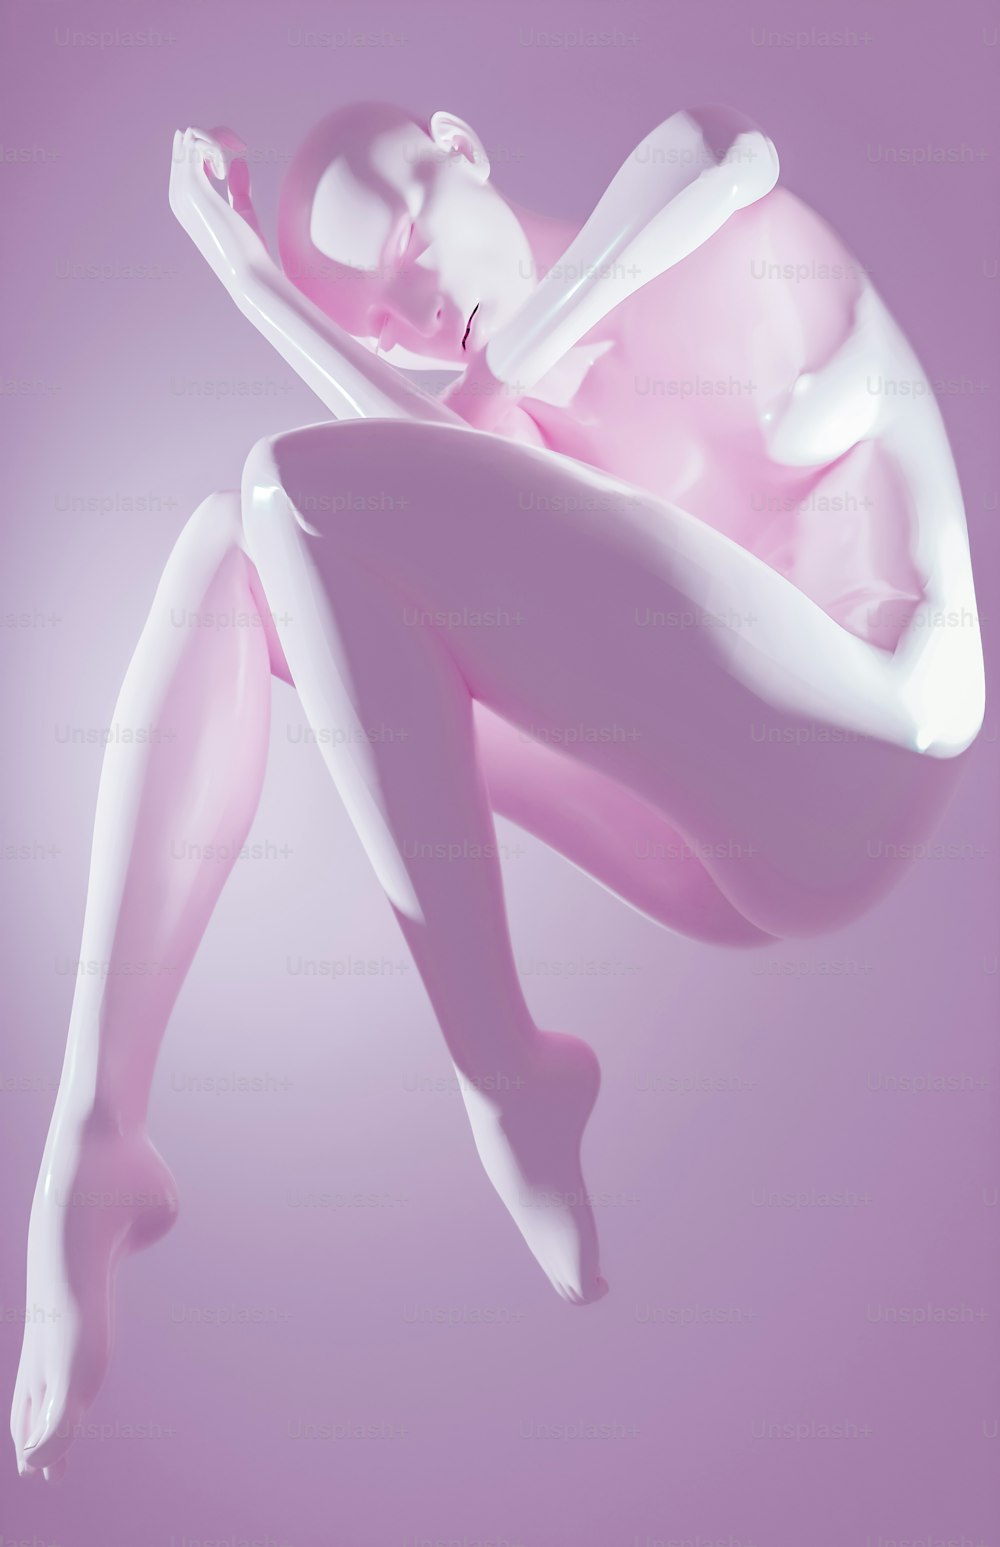 Une photo rose et blanche d’une femme flottant dans les airs